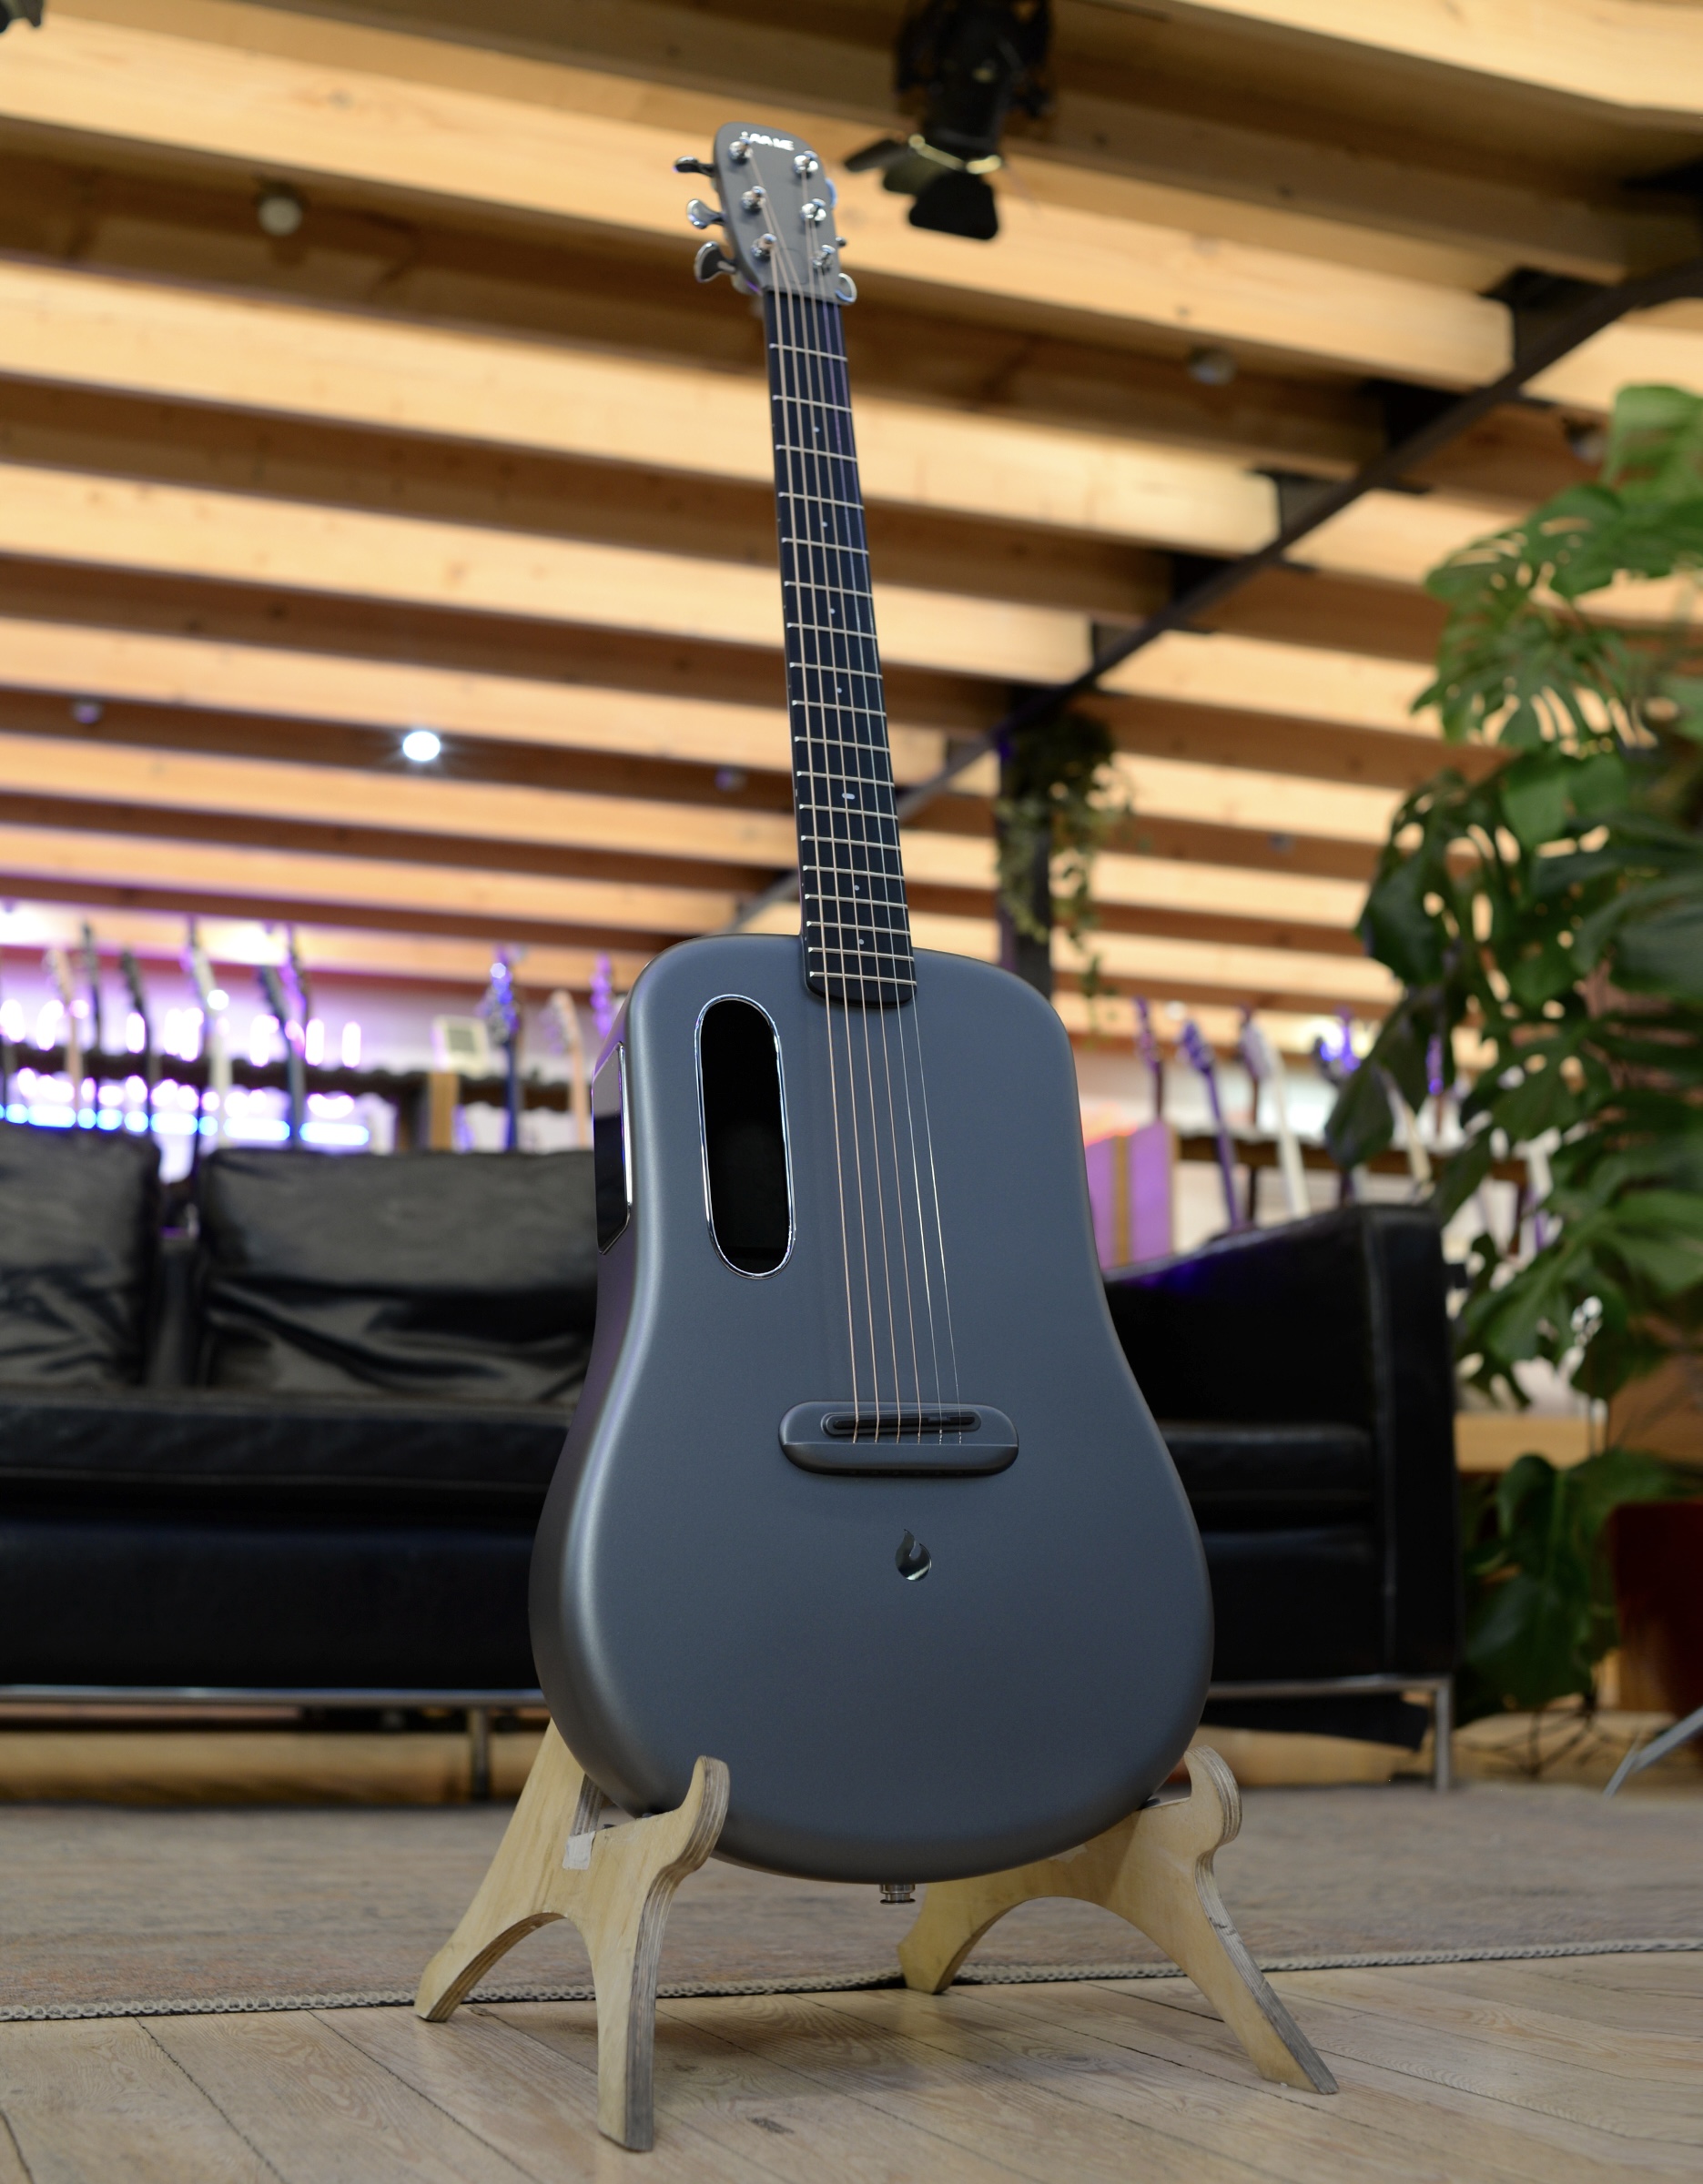 Трансакустическая гитара Lava Me-4 Space Grey 36” - купить в "Гитарном Клубе"